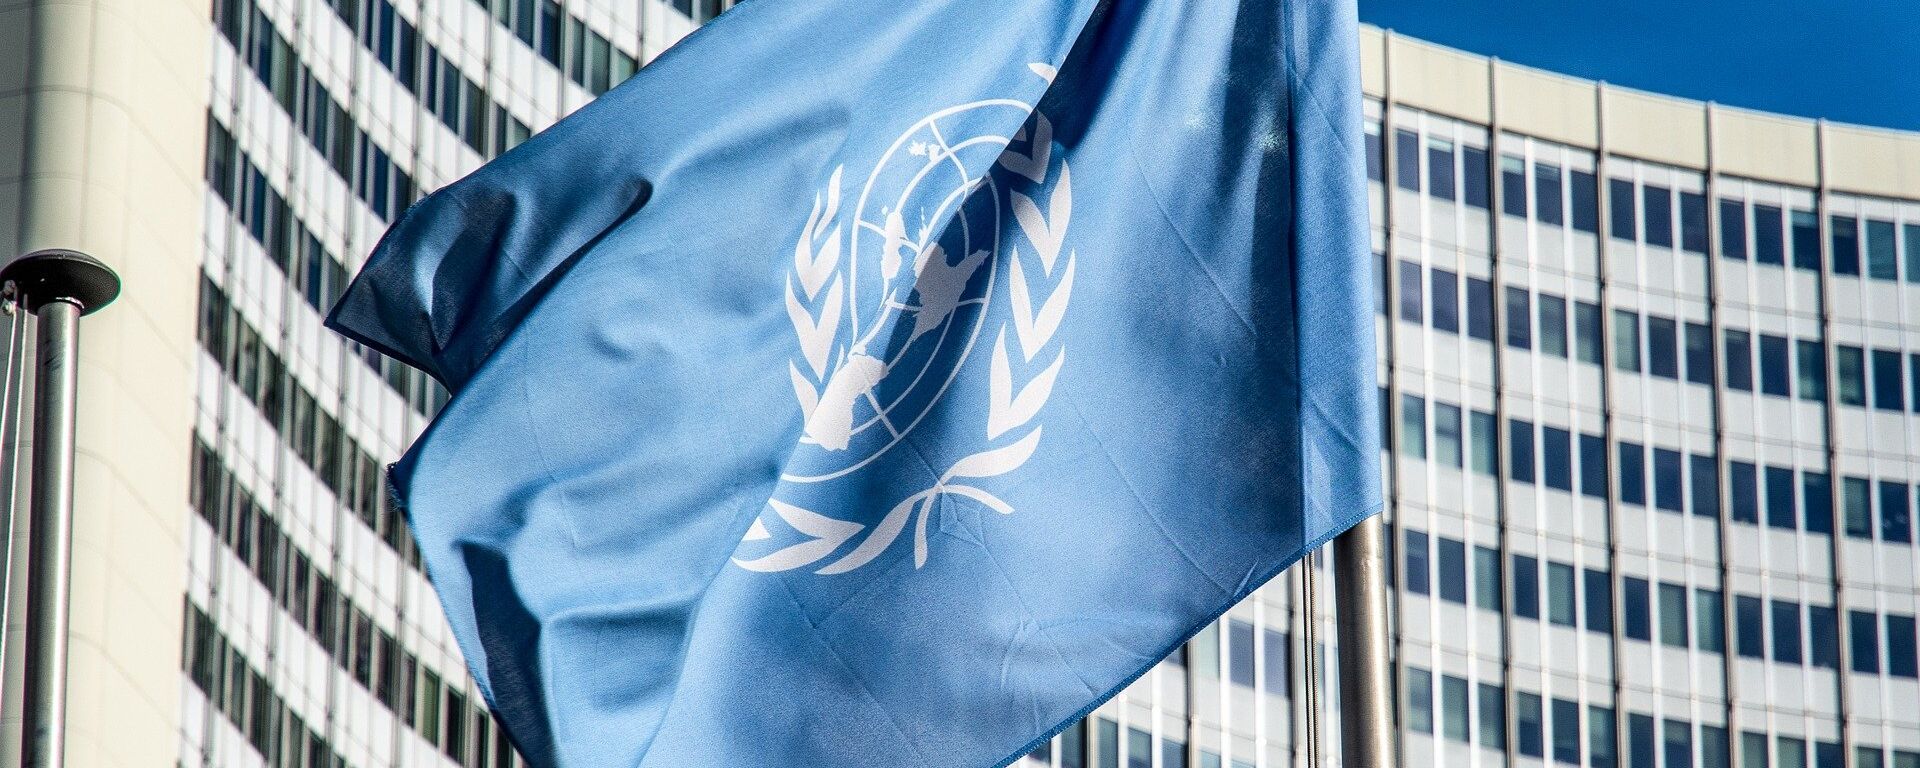 La bandera de la ONU - Sputnik Mundo, 1920, 23.02.2021